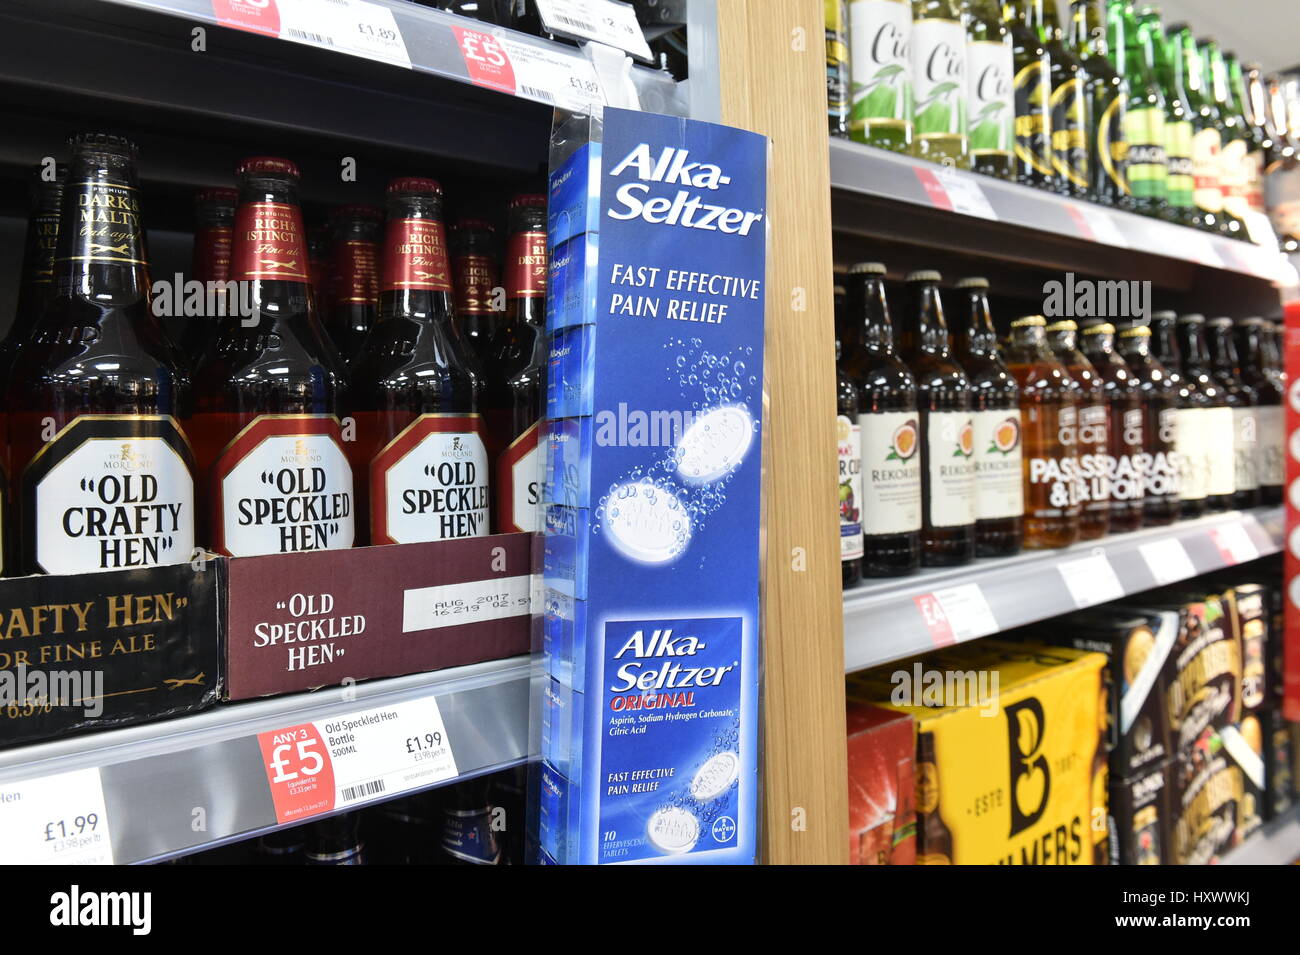 Cerveza y alka selzter en venta en supermercado Aldi exceso de navidad Foto de stock